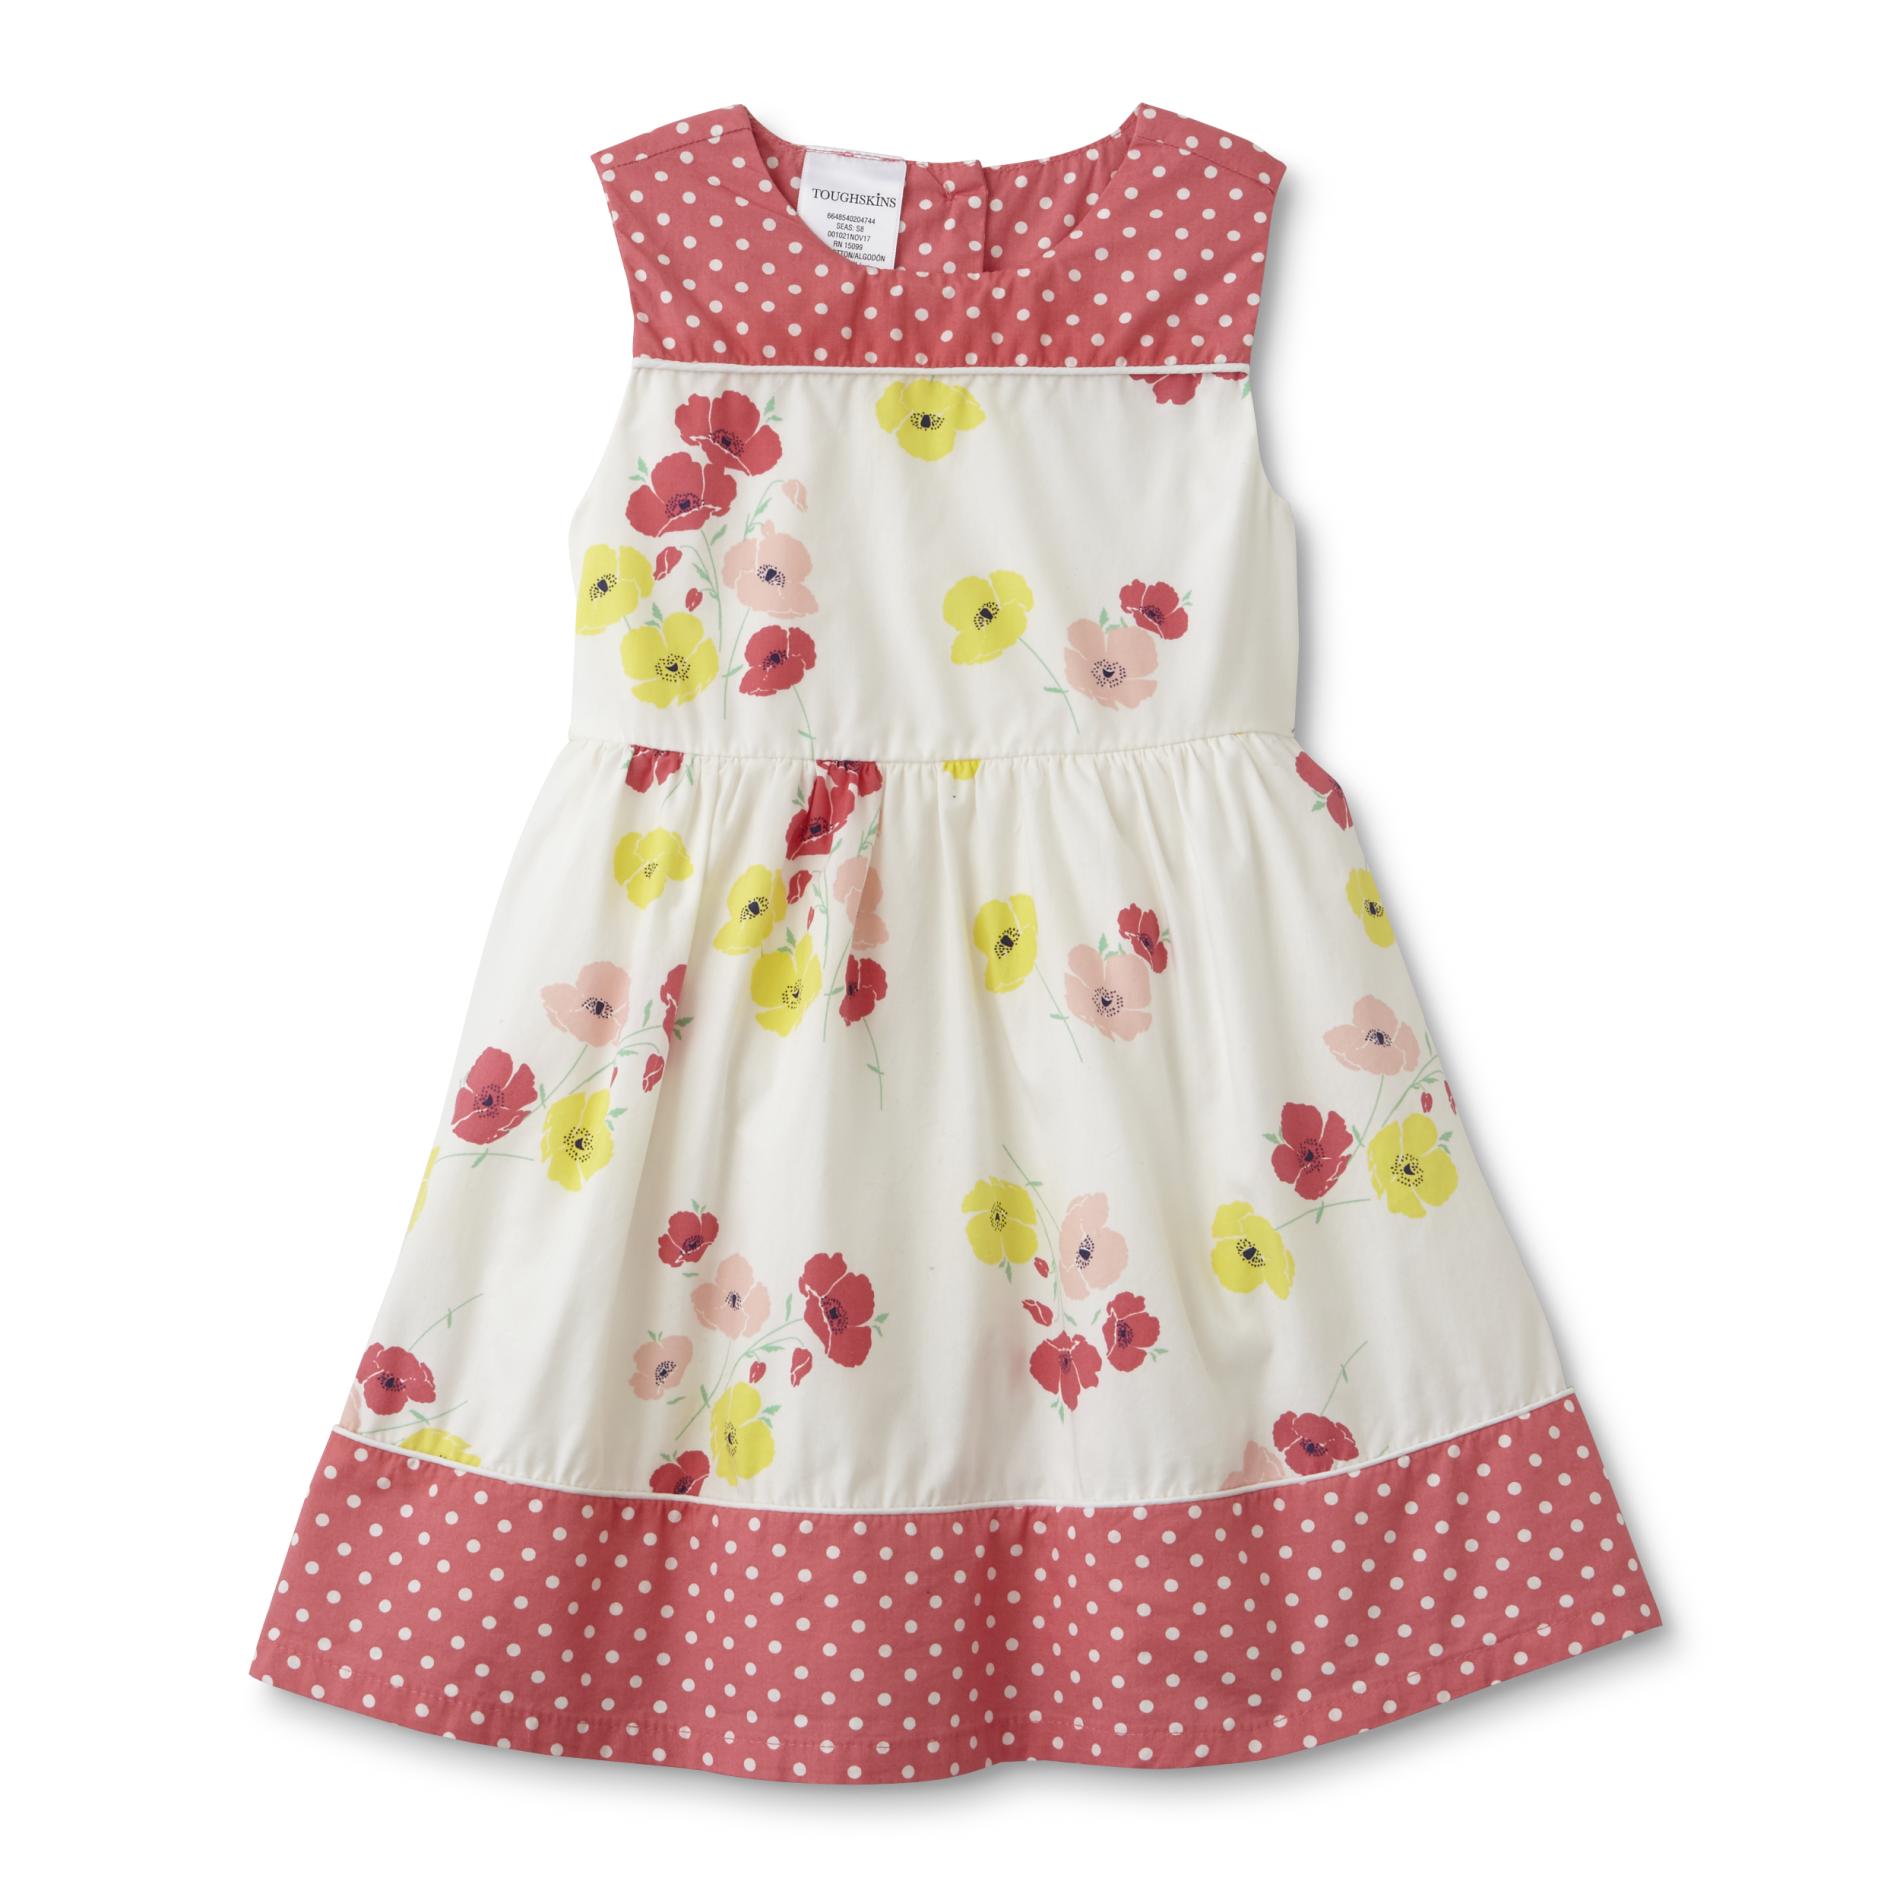 Toughskins Infant & Toddler Girls' Sundress - Floral